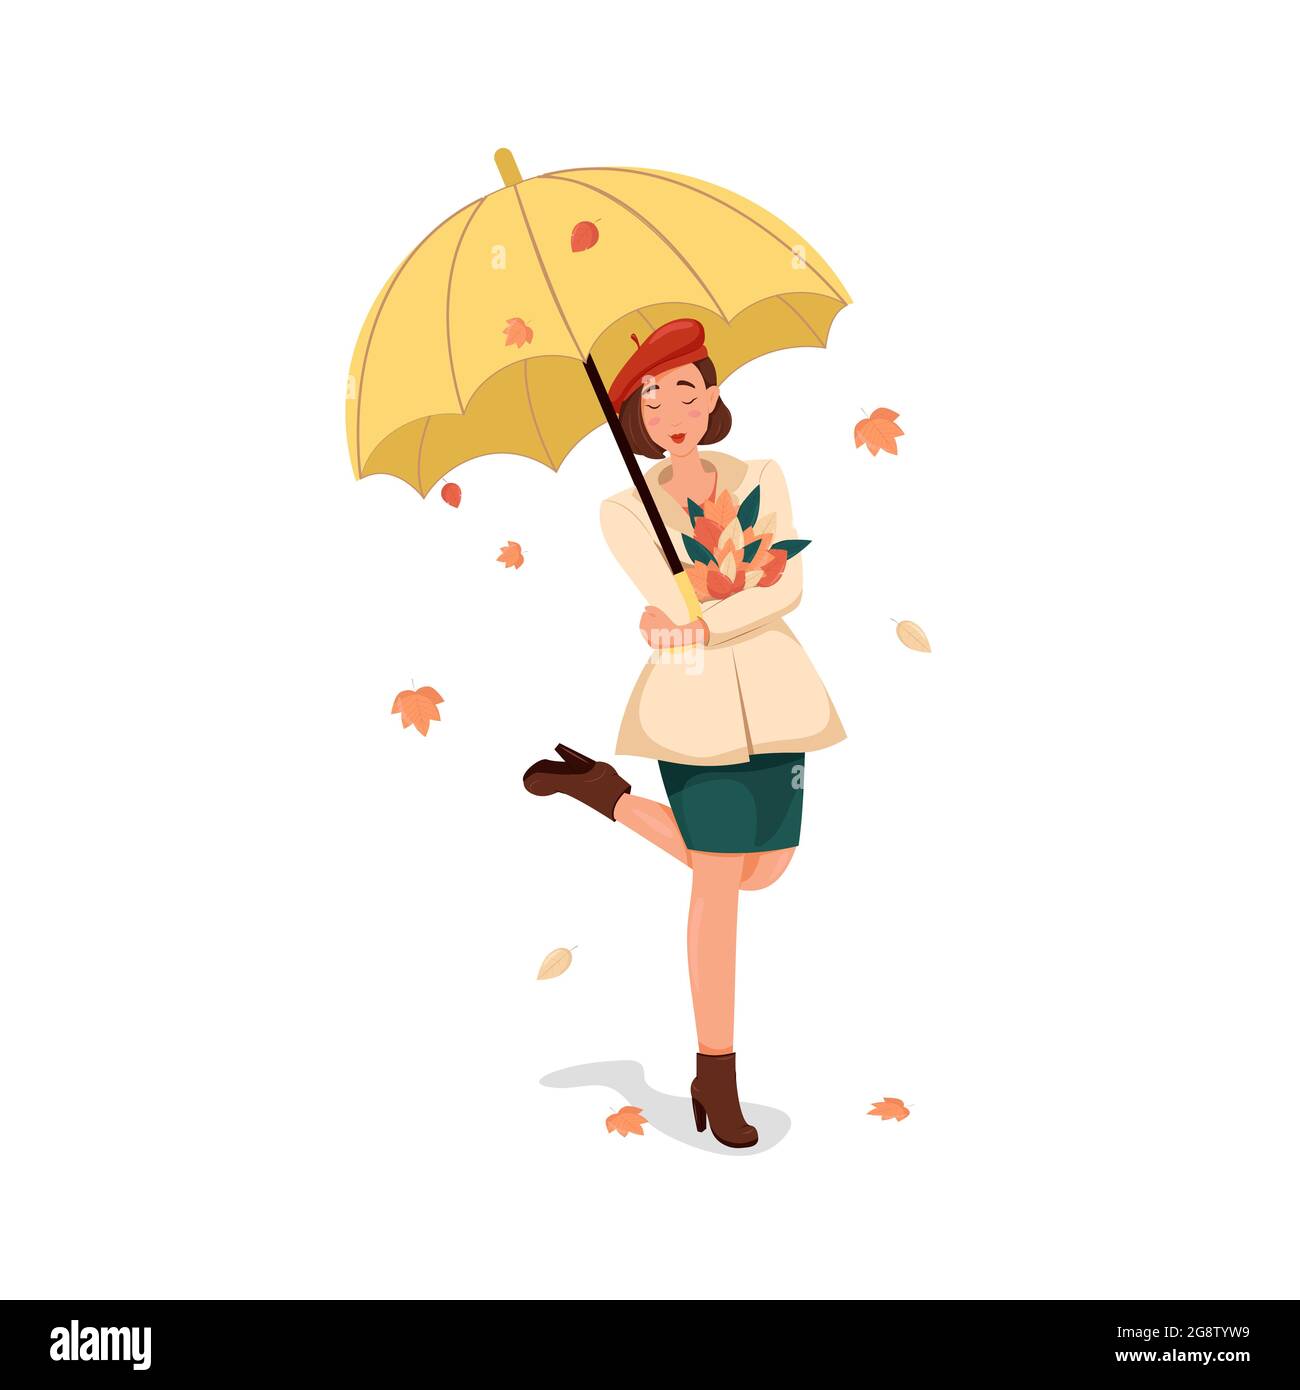 Mädchen in einem Mantel und einer roten Baskenmütze steht unter einem gelben Regenschirm, glückliche Frau genießt einen Herbstspaziergang, Vektorgrafik im Cartoon-Stil. Flaches Design Stock Vektor